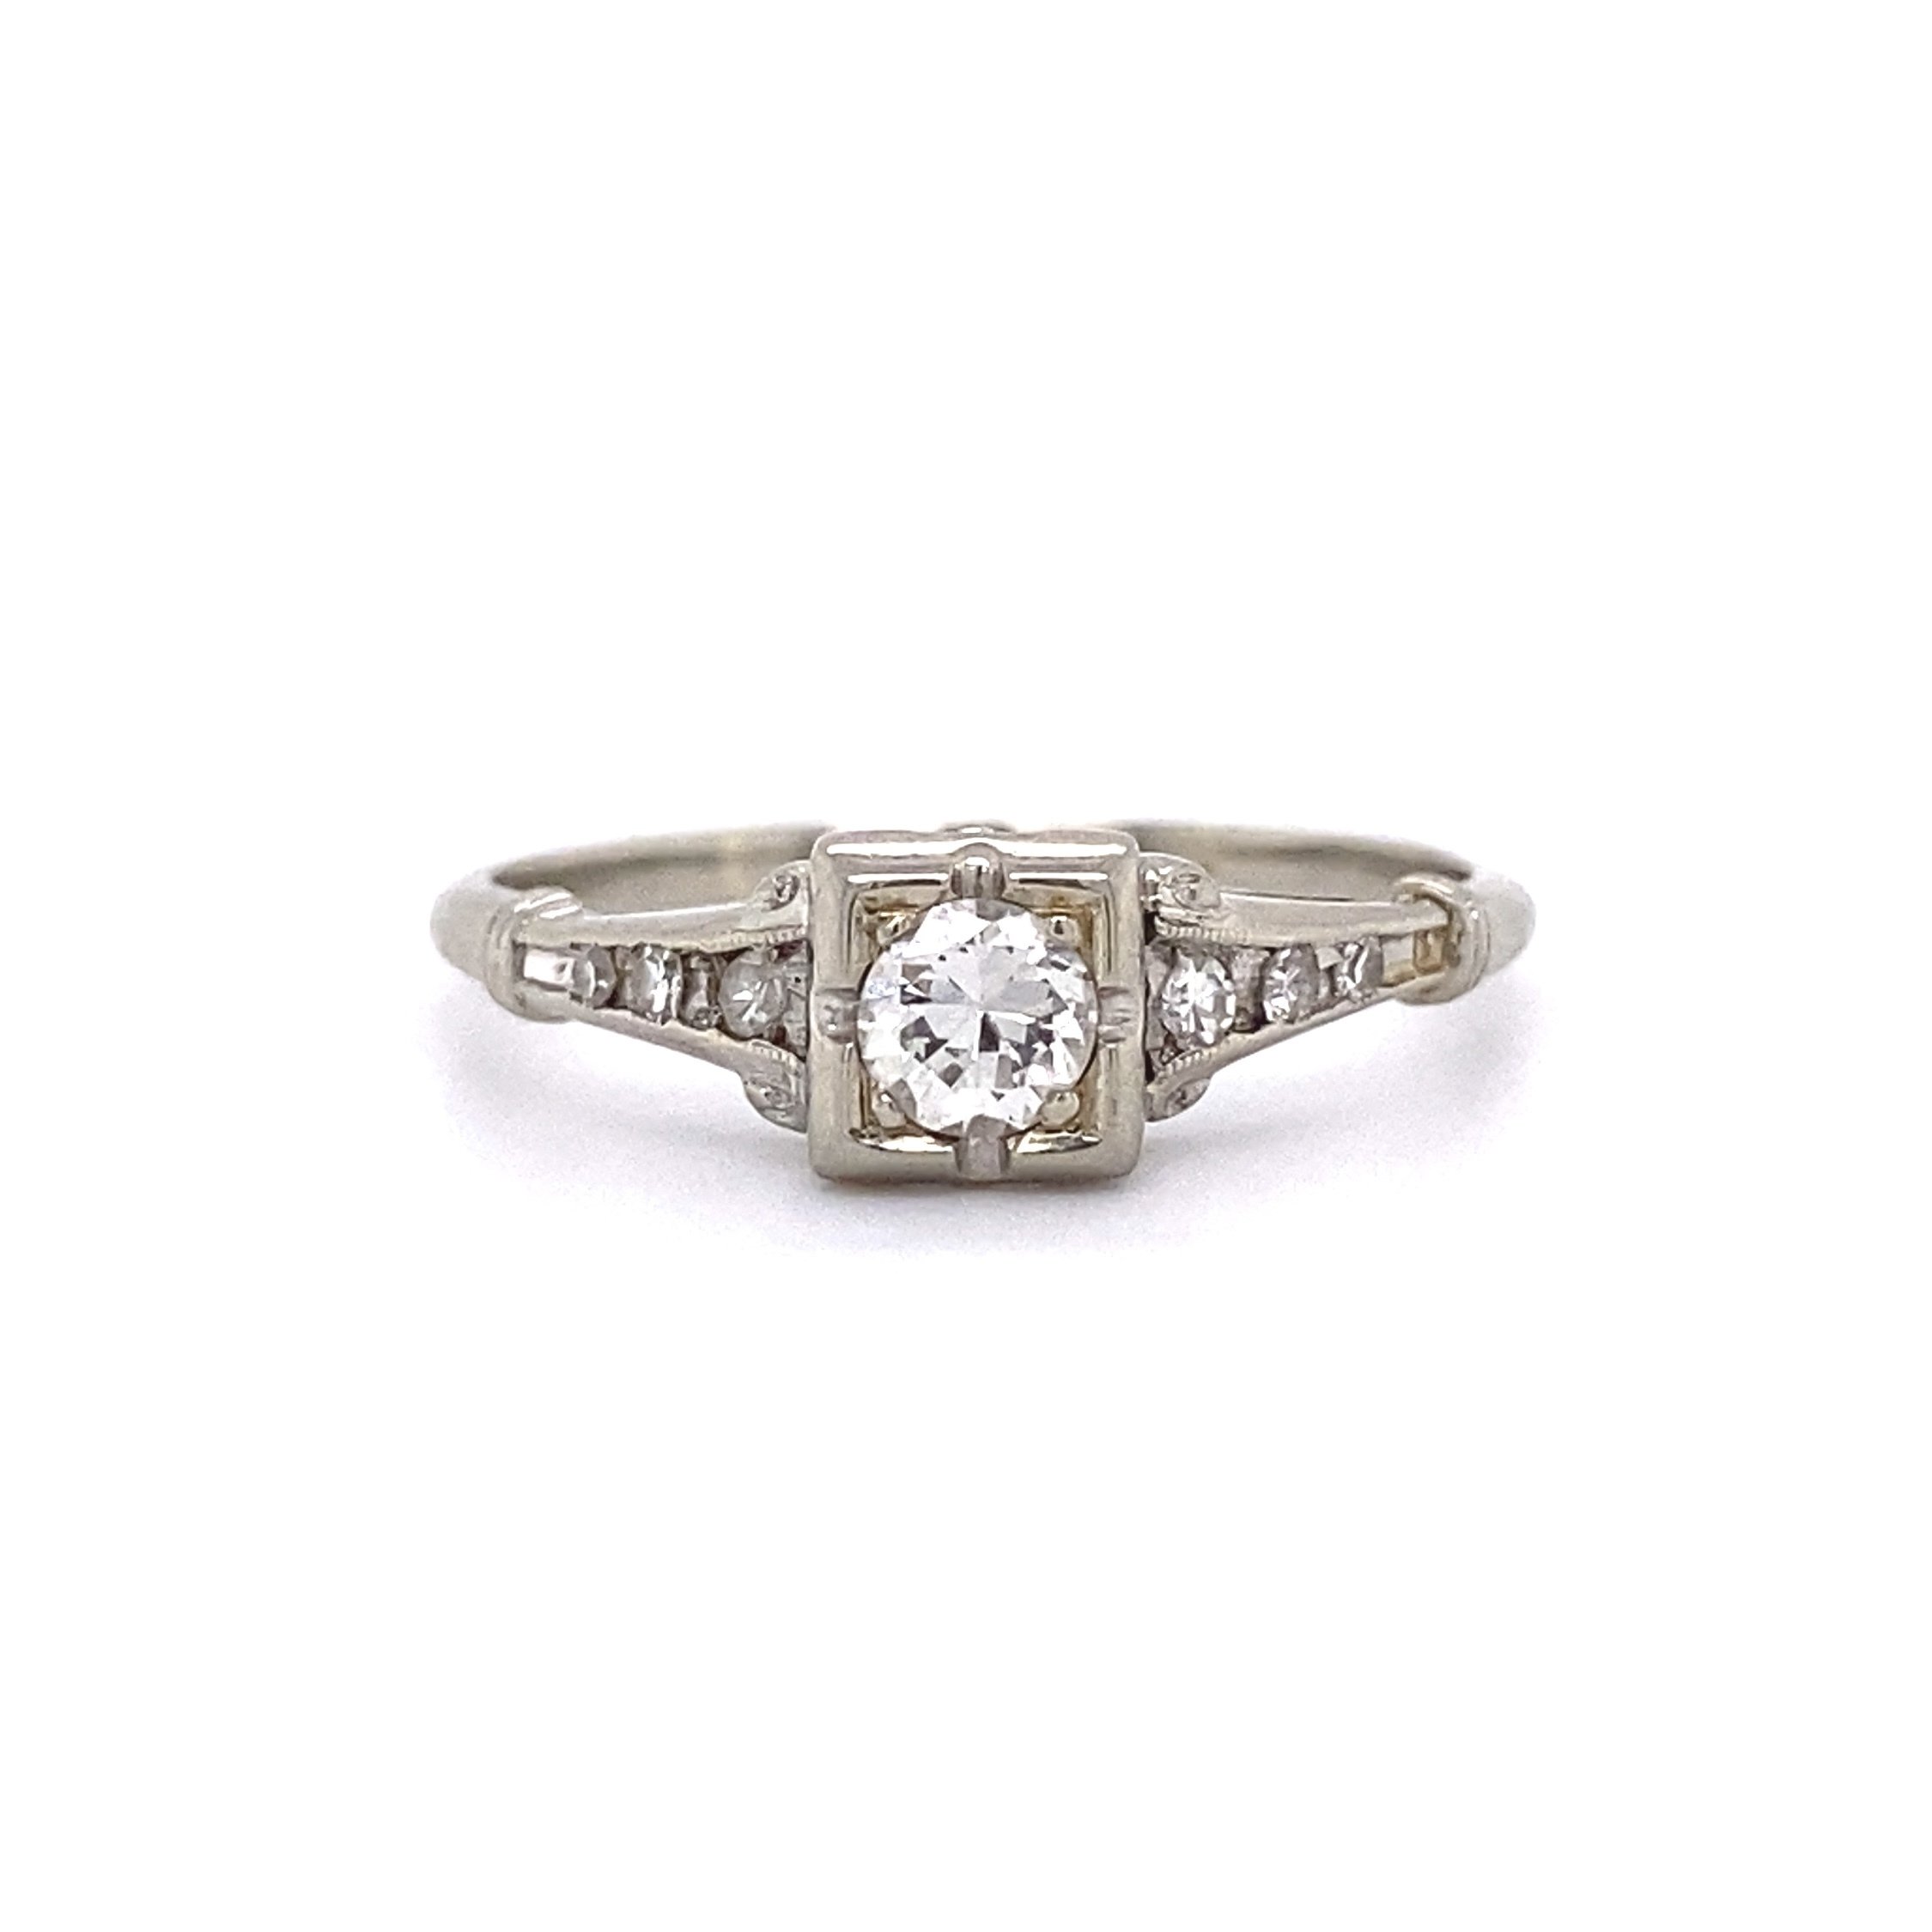 18K WG Art Deco .35ct Transitional Diamond Milgrain Ring 2.0g, s7.5